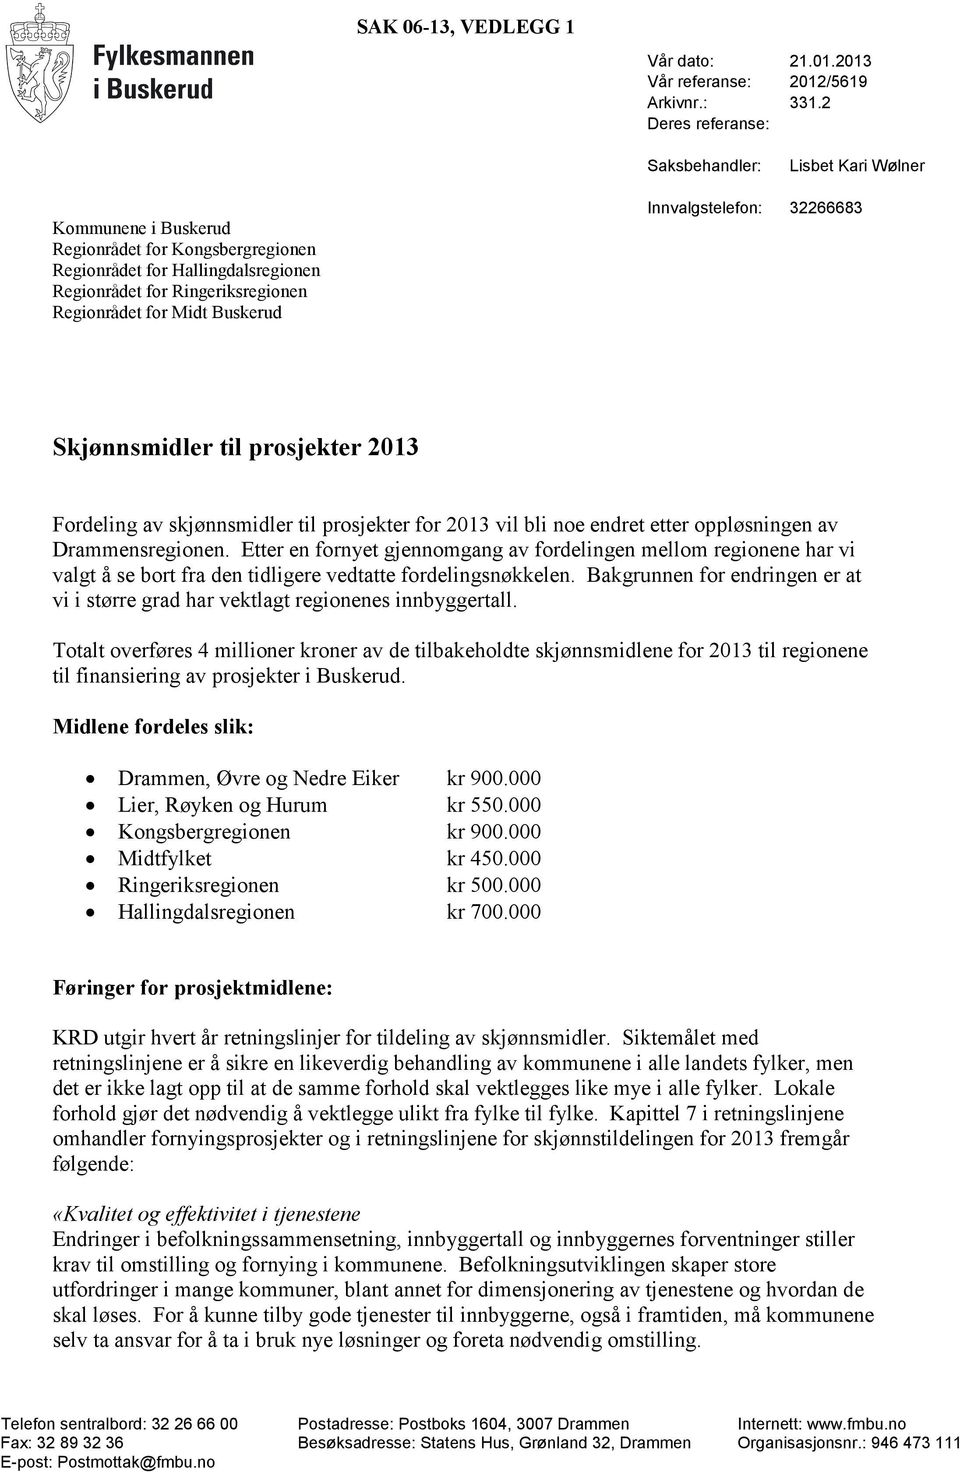 Buskerud Innvalgstelefon: 32266683 Skjønnsmidler til prosjekter 2013 Fordeling av skjønnsmidler til prosjekter for 2013 vil bli noe endret etter oppløsningen av Drammensregionen.